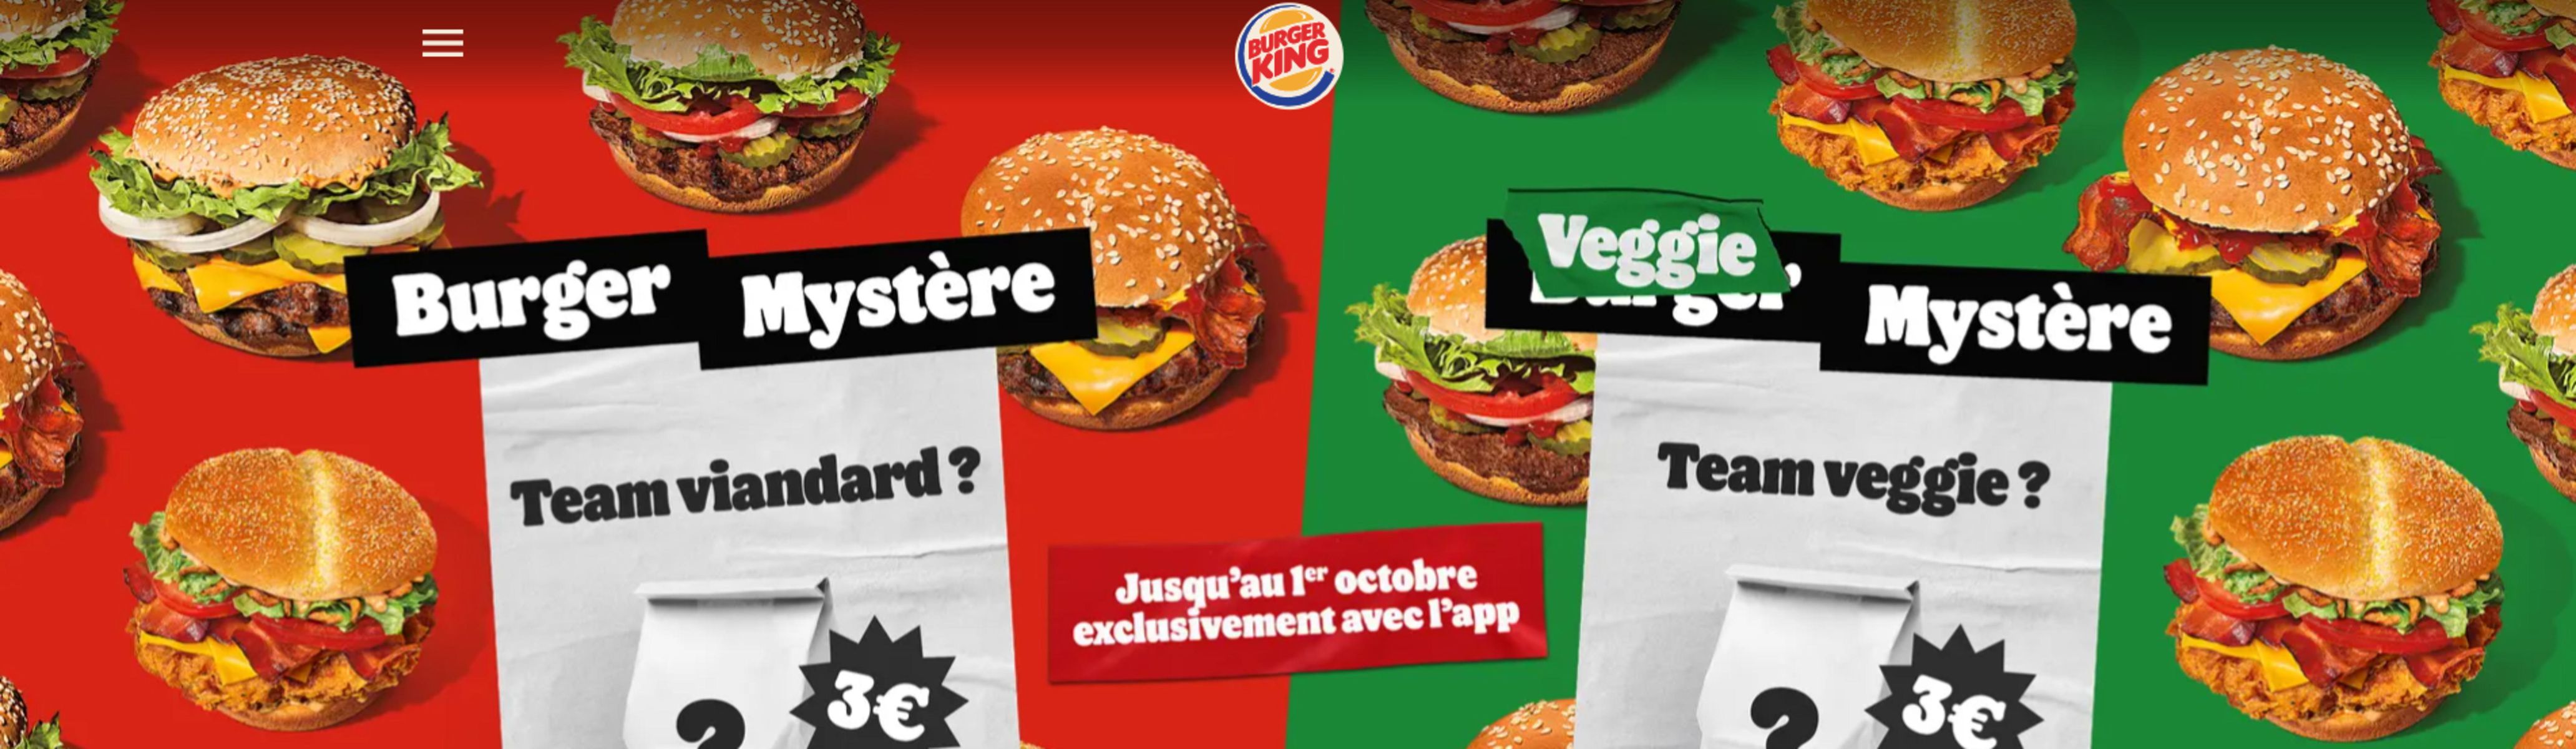 Catalogue Nouvelle offres Burger King, page 00001